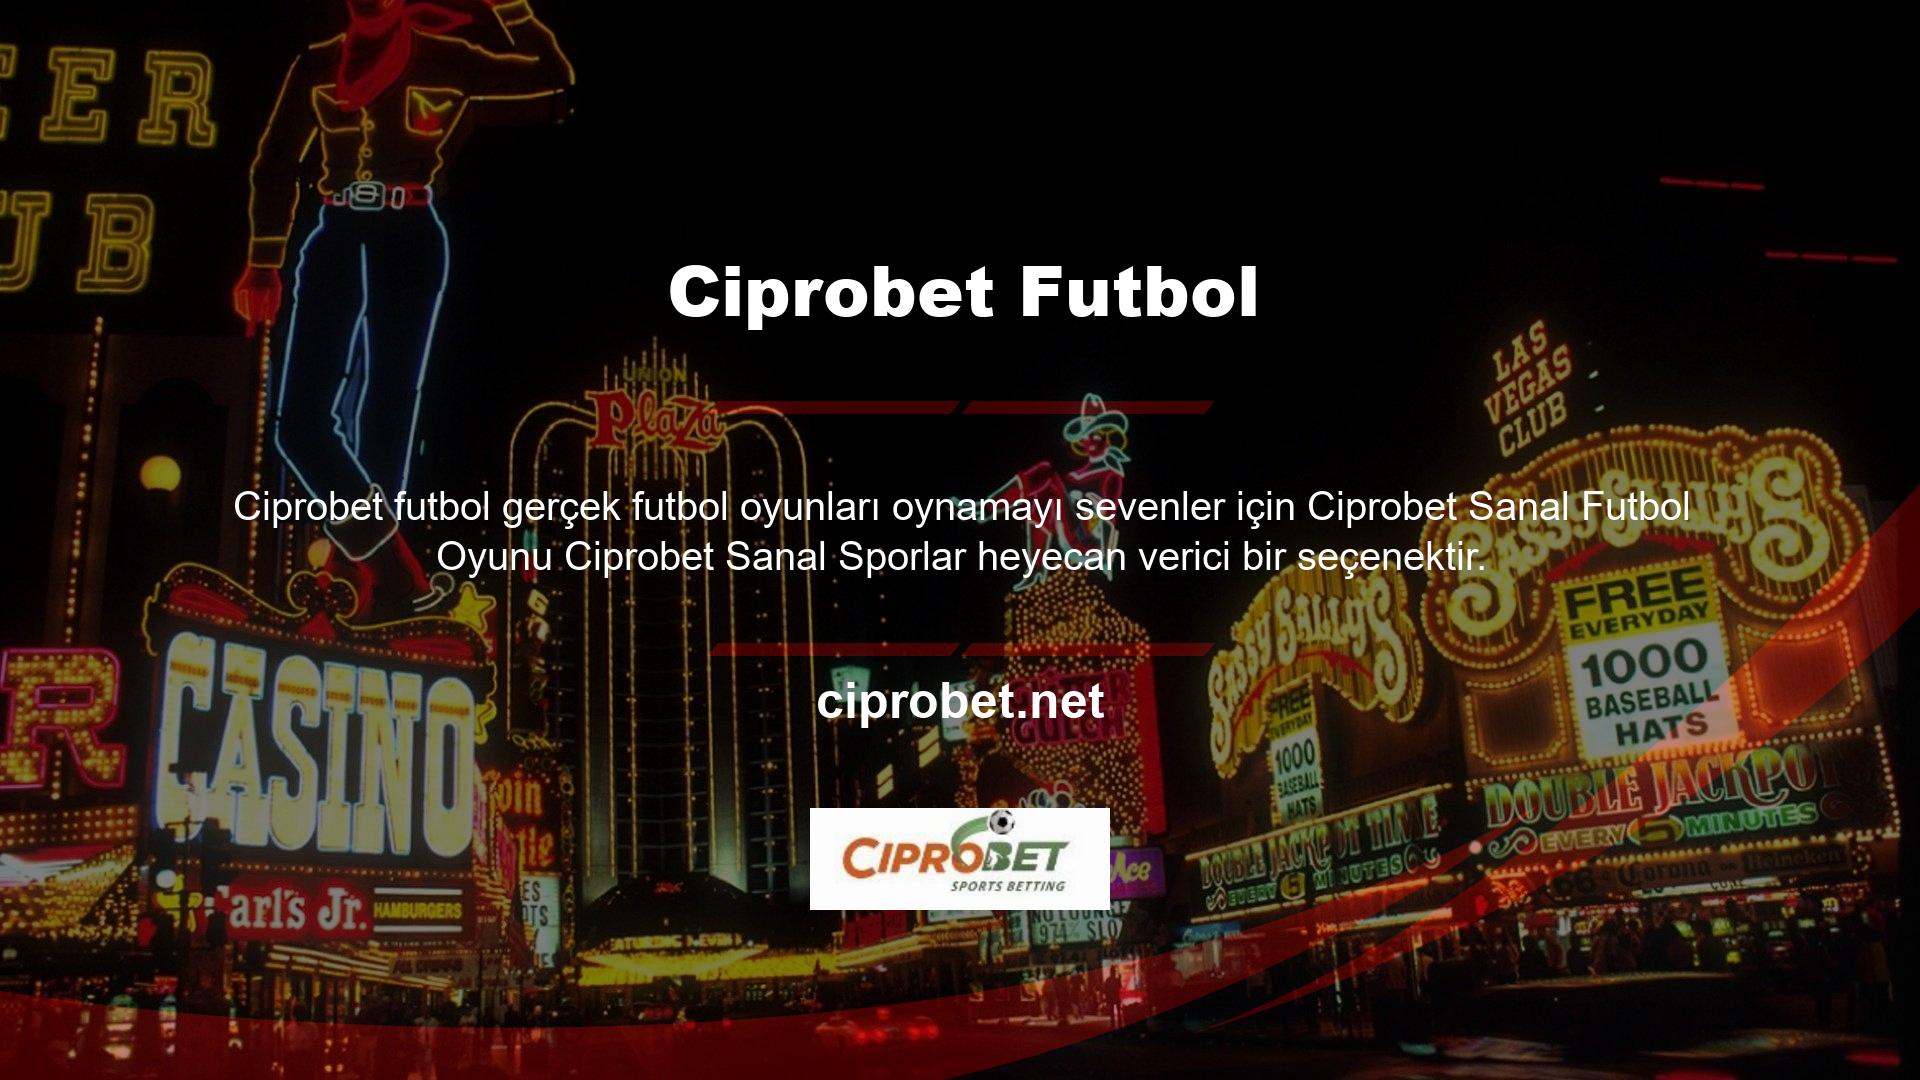 Bahis oynayabileceğiniz çevrimiçi futbol müsabakalarına katılabilirsiniz